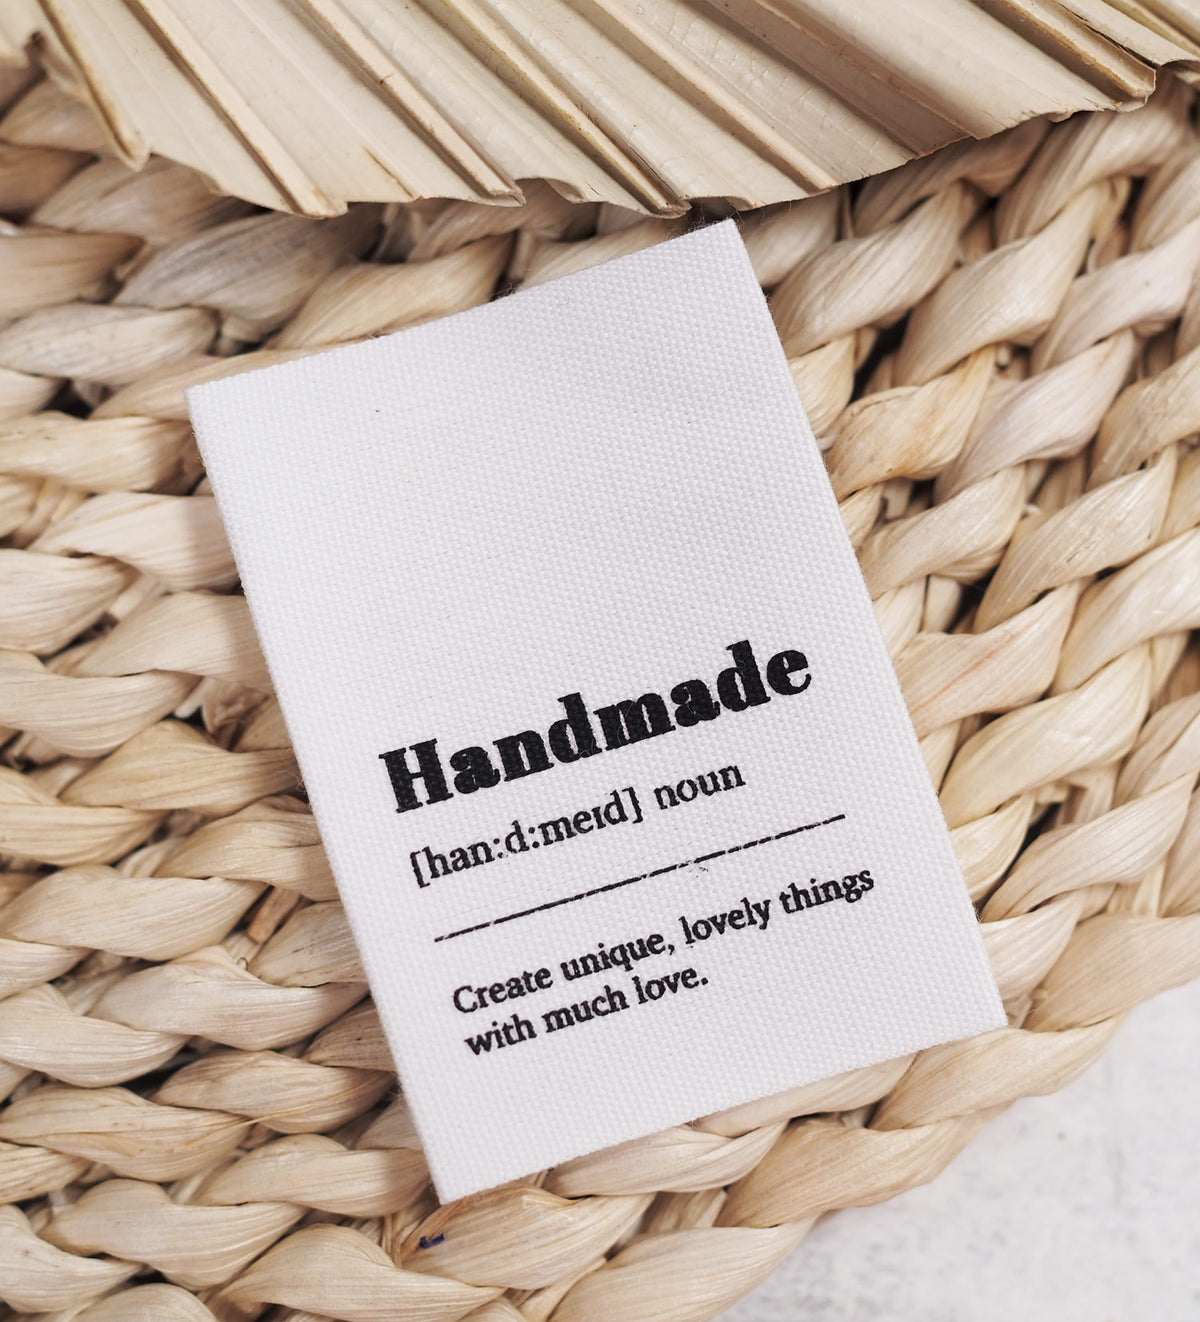 Baumwolllabel *handmade - create unique, lovey things* - 4er Pack